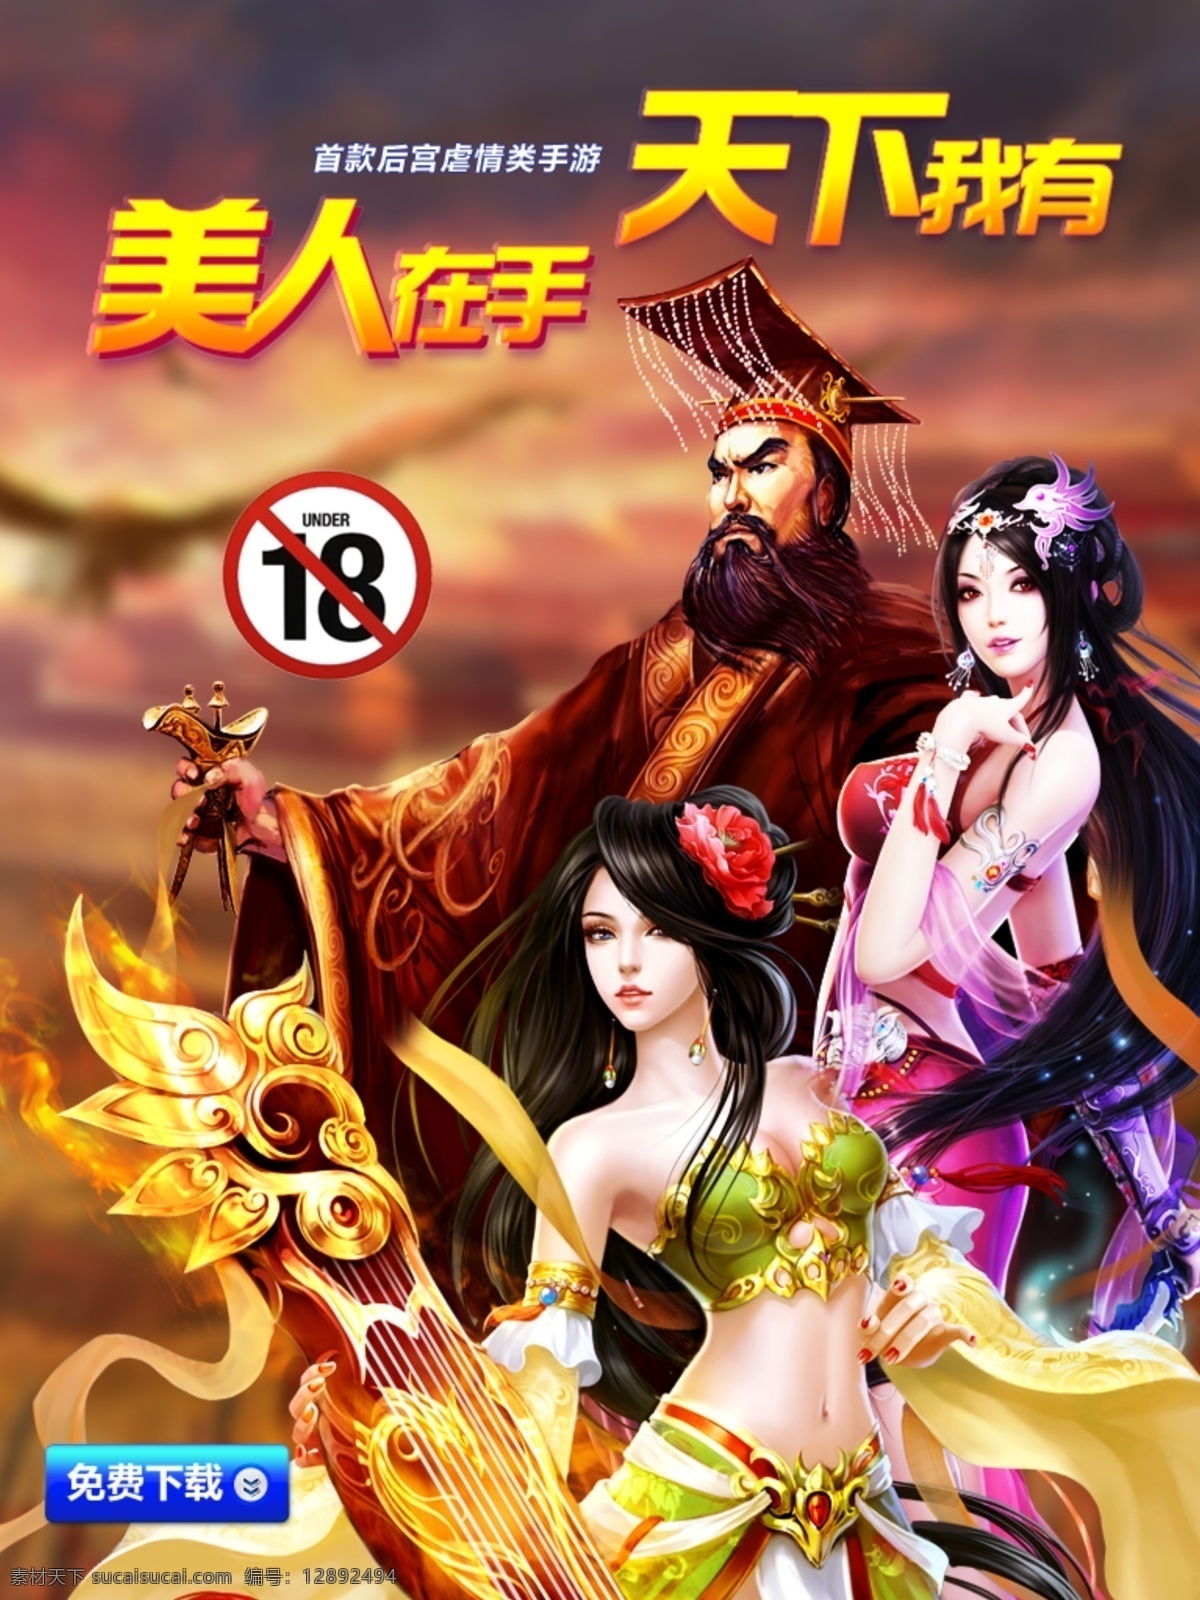 游戏 美女 古装 宫廷 海报 页面 中文模板 网页模板 源文件